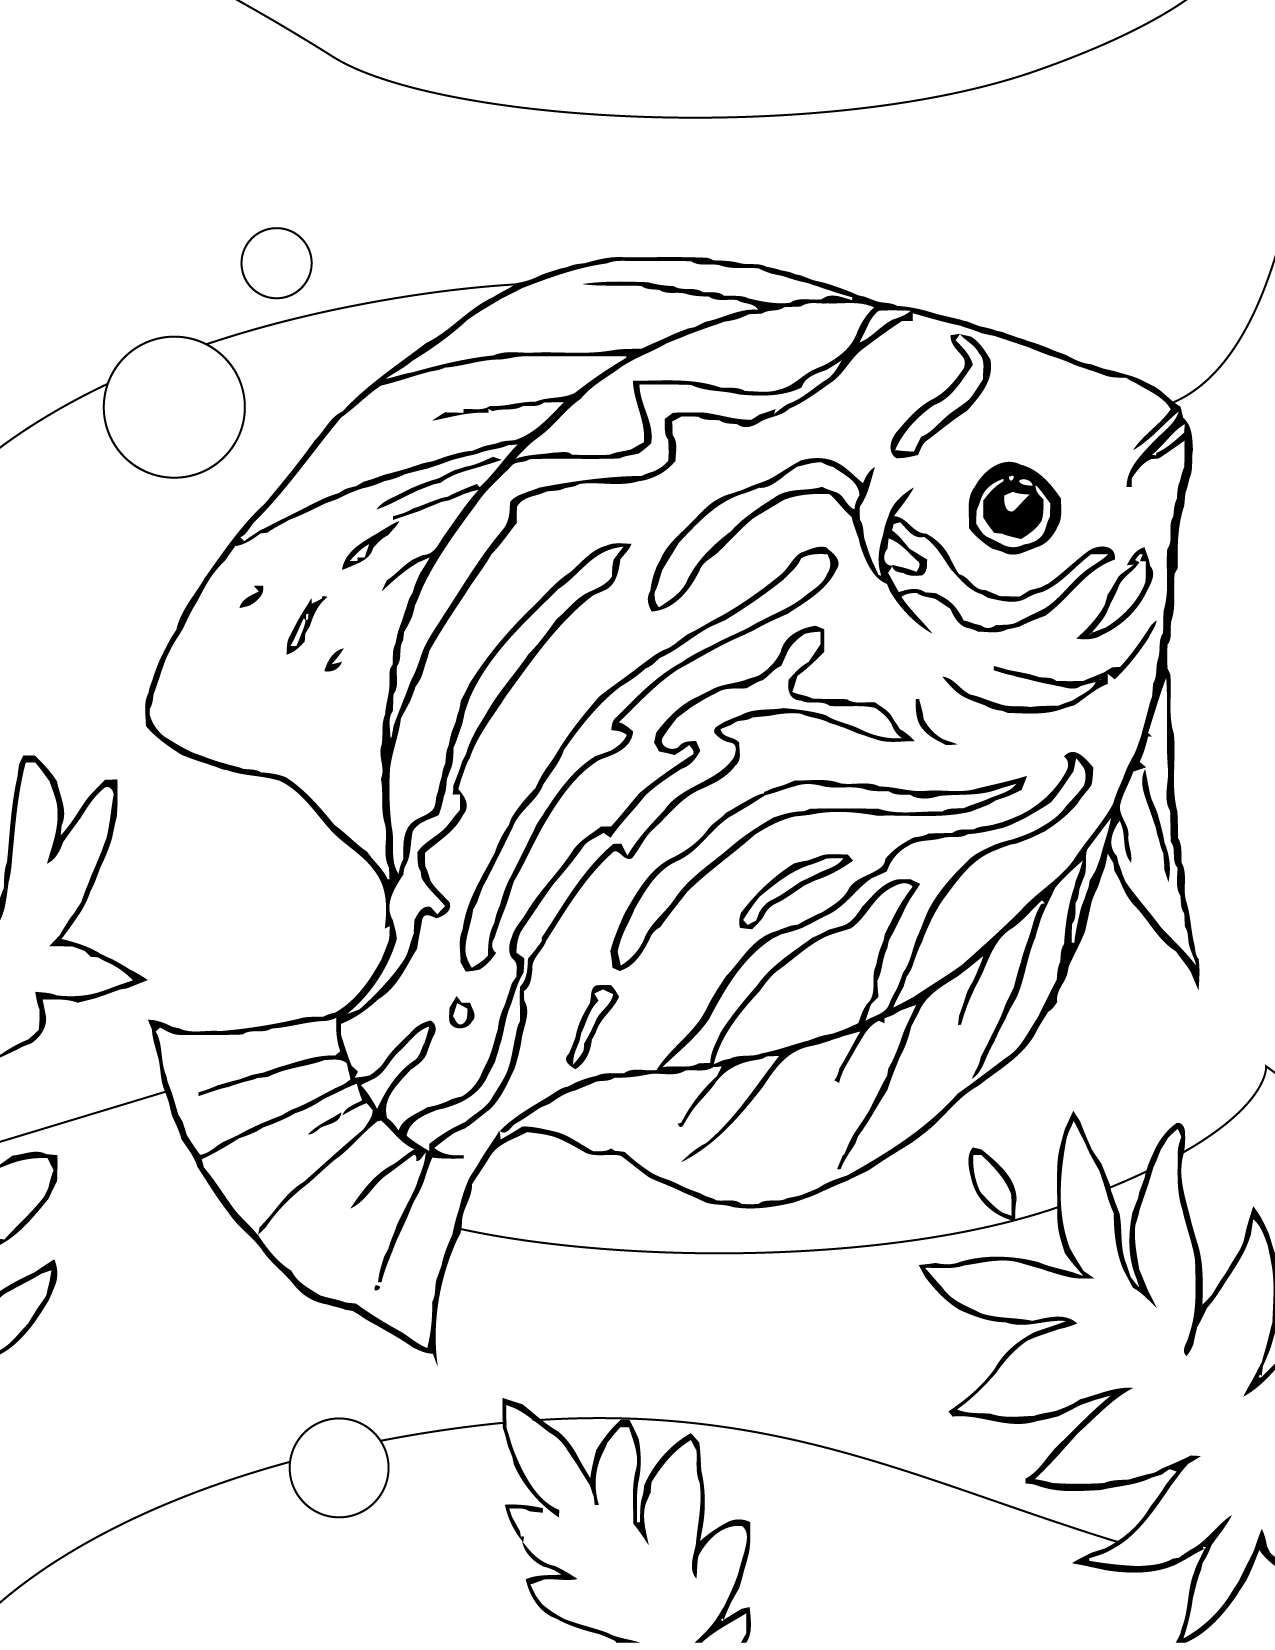 Aquarium Fish Coloring Pages at GetColorings.com | Free printable